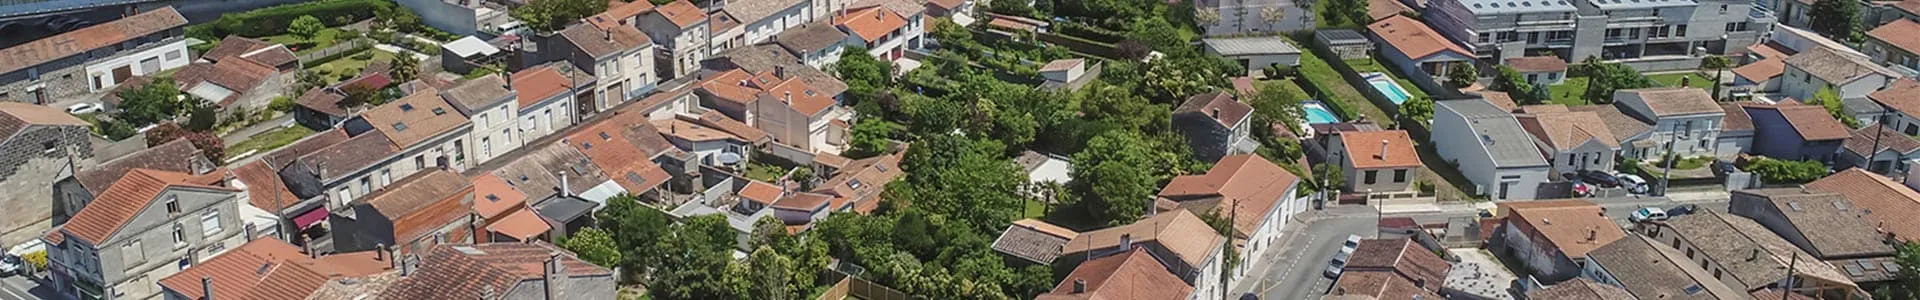 Vue aérienne du quartier autour de la résidence L'Écrin d'Achillée